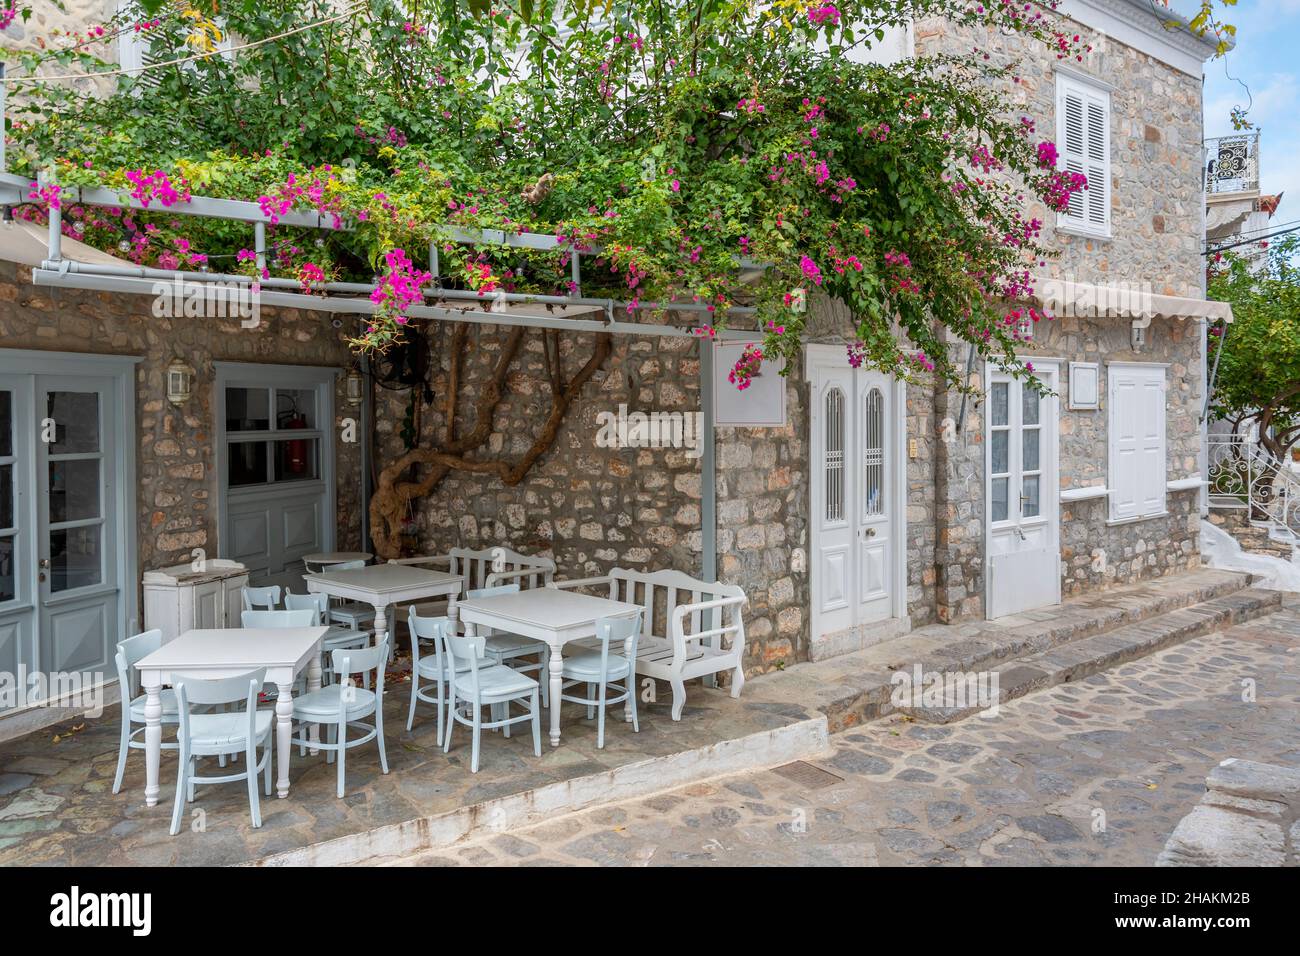 Une rue pittoresque de maisons blanchies à la chaux et un petit café en plein air dans le village de la petite île grecque d'Hydra, en Grèce. Banque D'Images